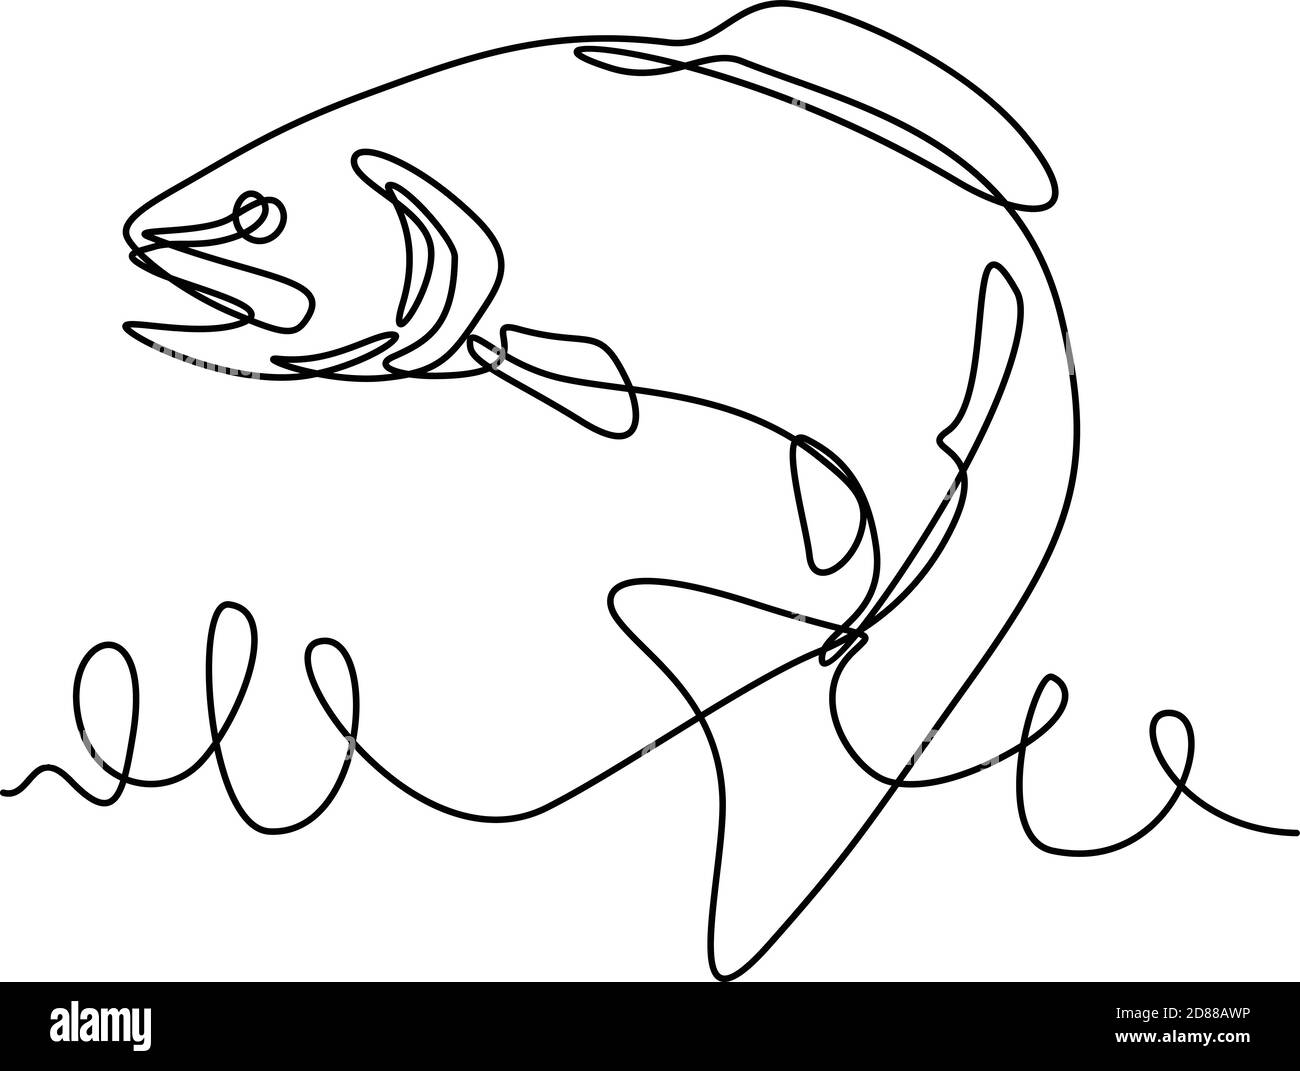 Illustration en ligne continue d'une truite arc-en-ciel ou d'Oncorhynchus mykiss, une truite et une espèce de salmonidés indigènes aux affluents d'eau froide de TH Illustration de Vecteur